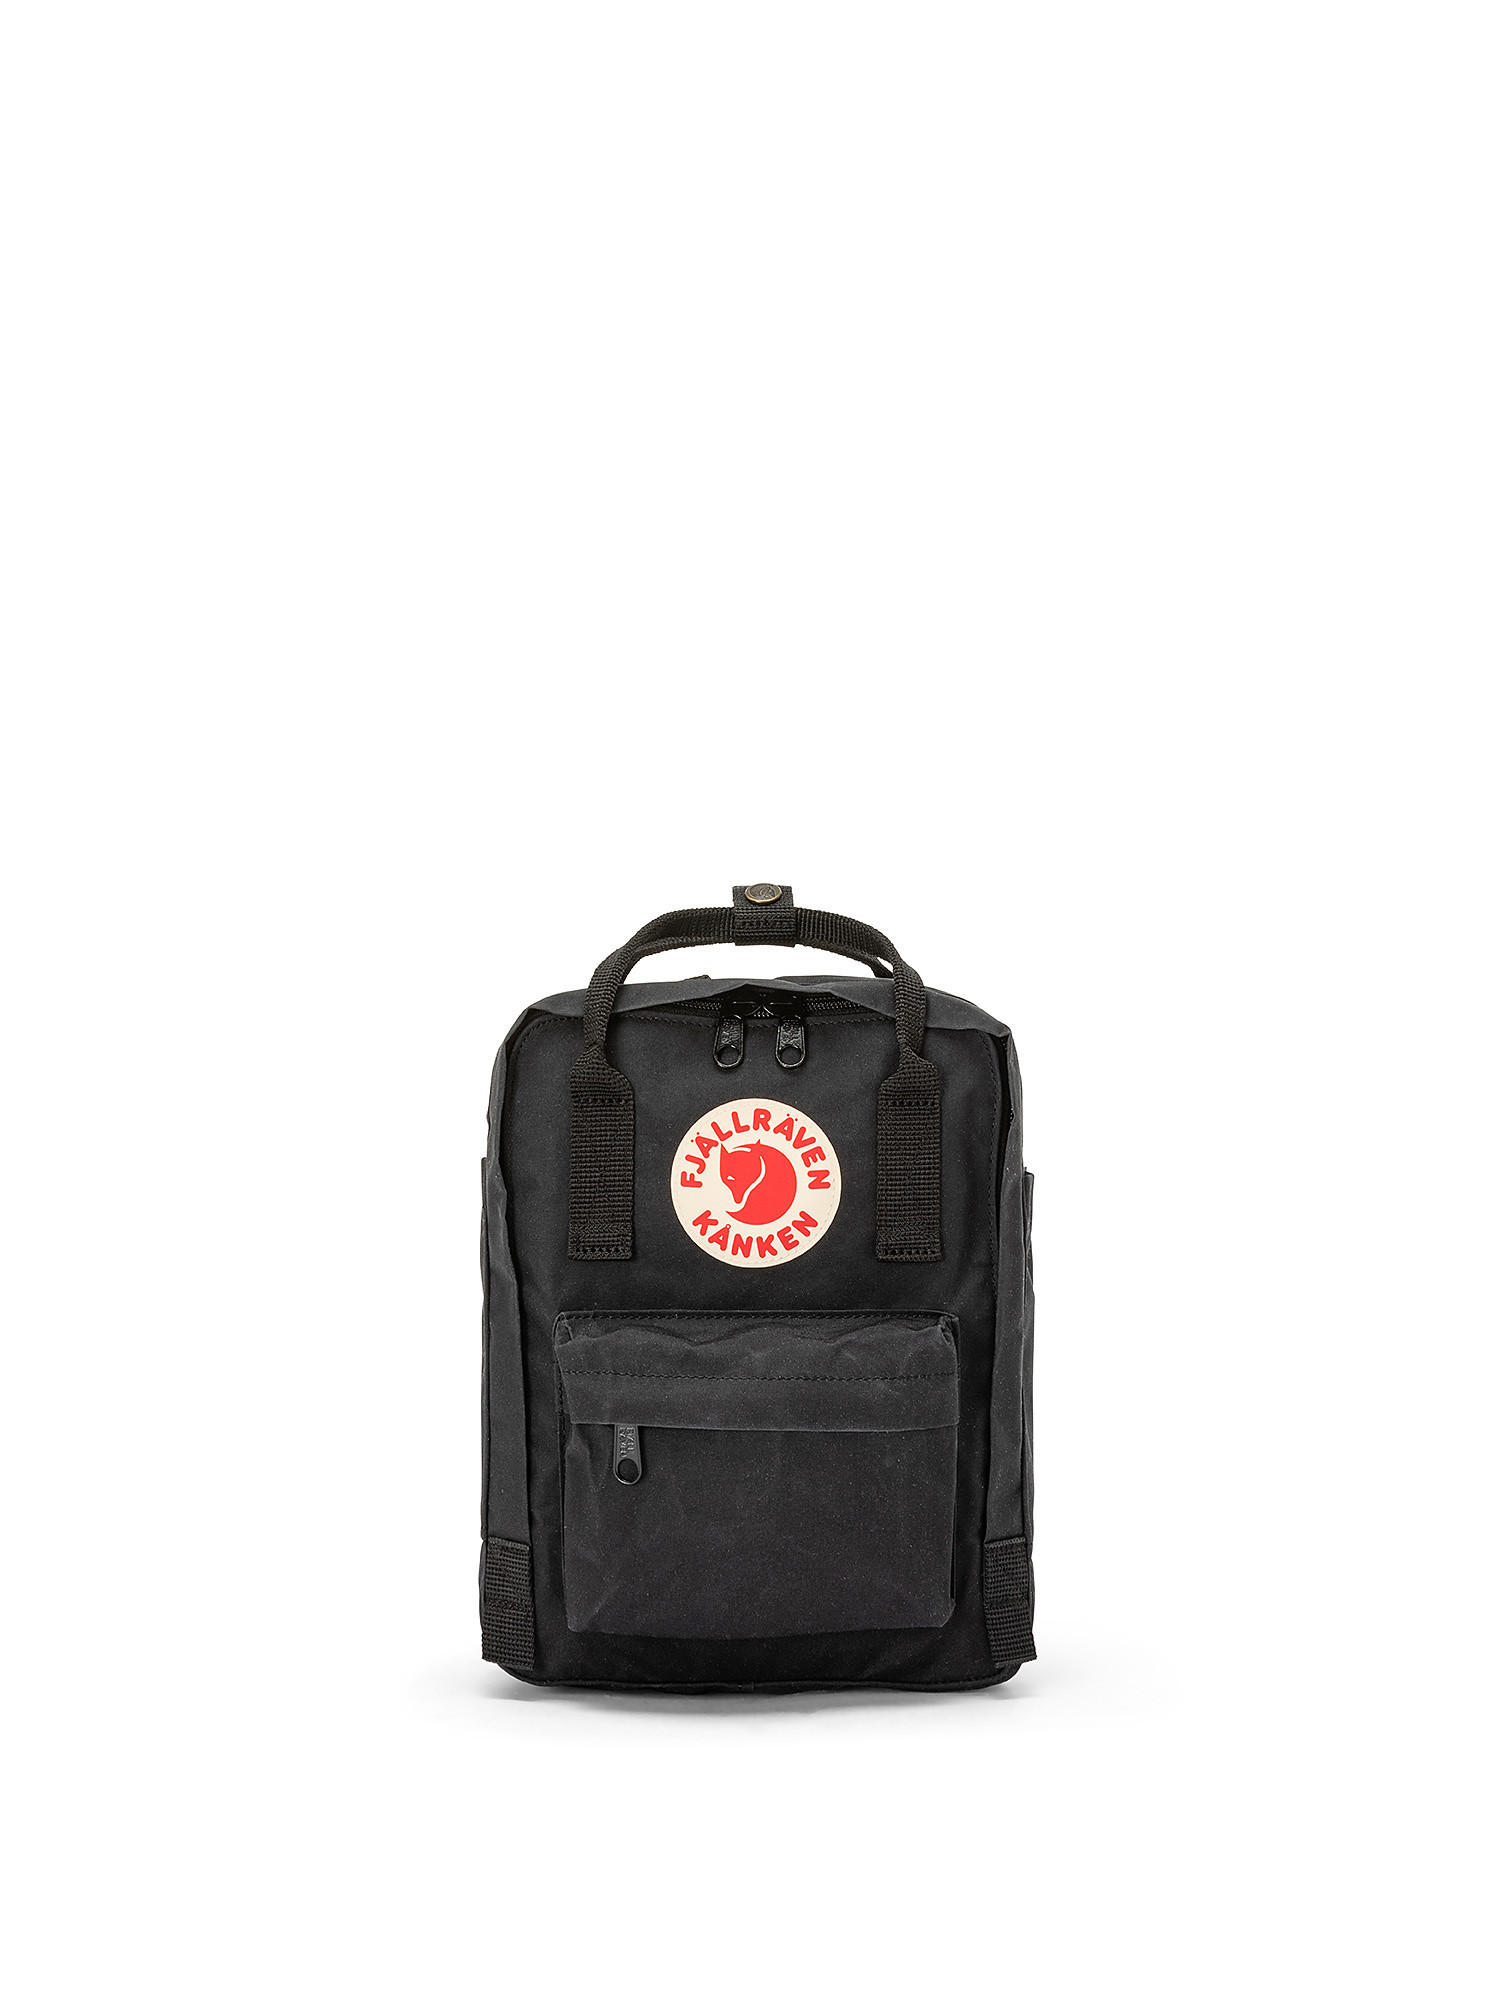 Kanken mini backpack, Black, large image number 0